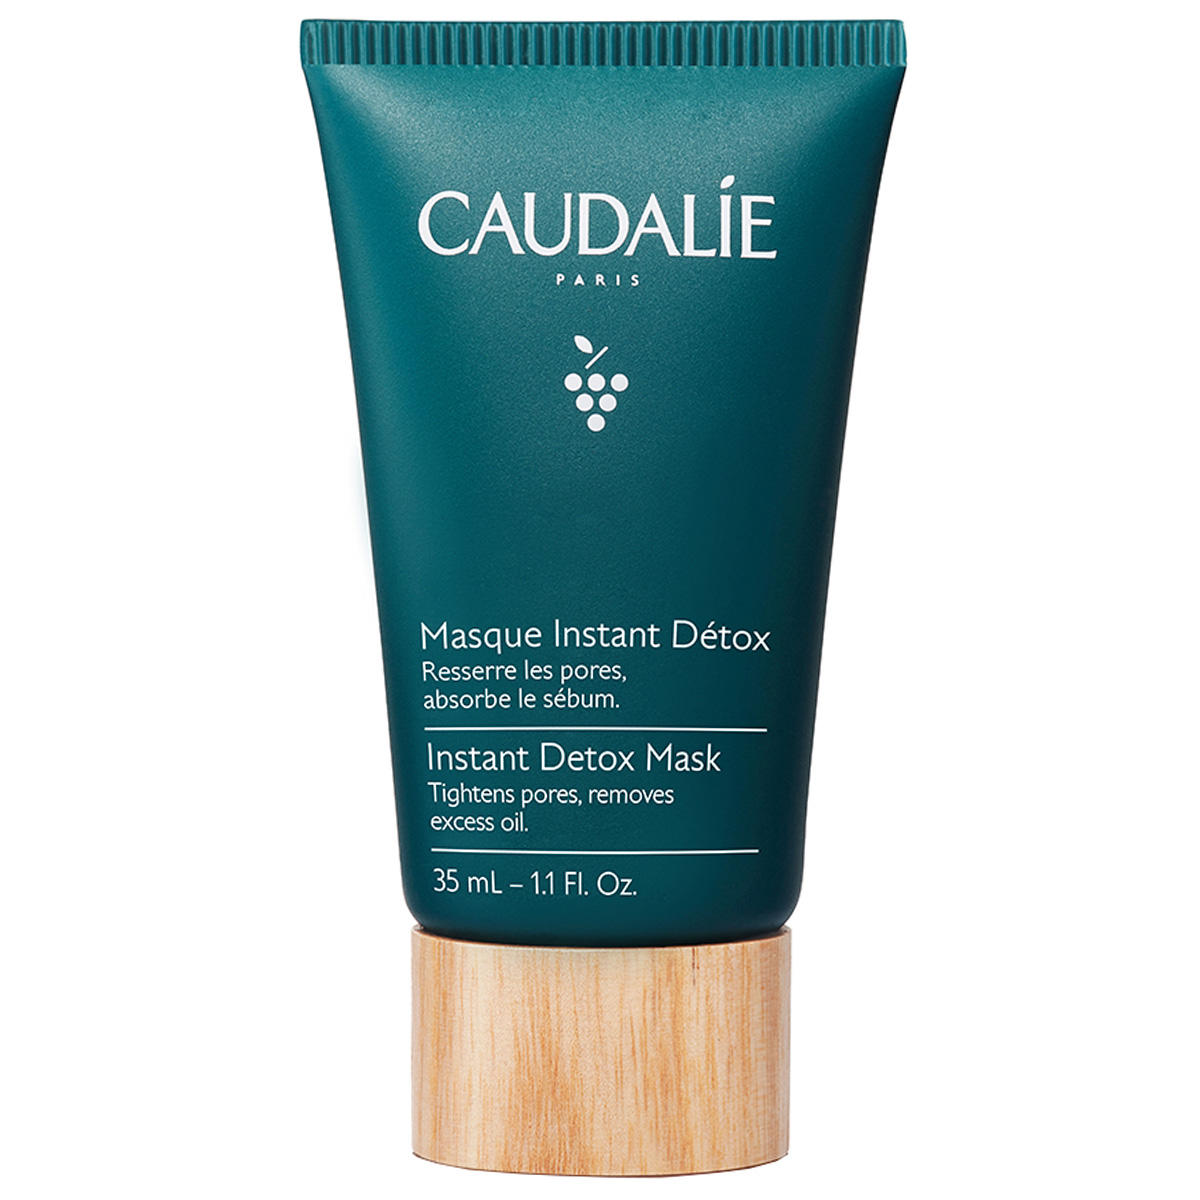 CAUDALIE Masque Instant Détox 35 ml - 1